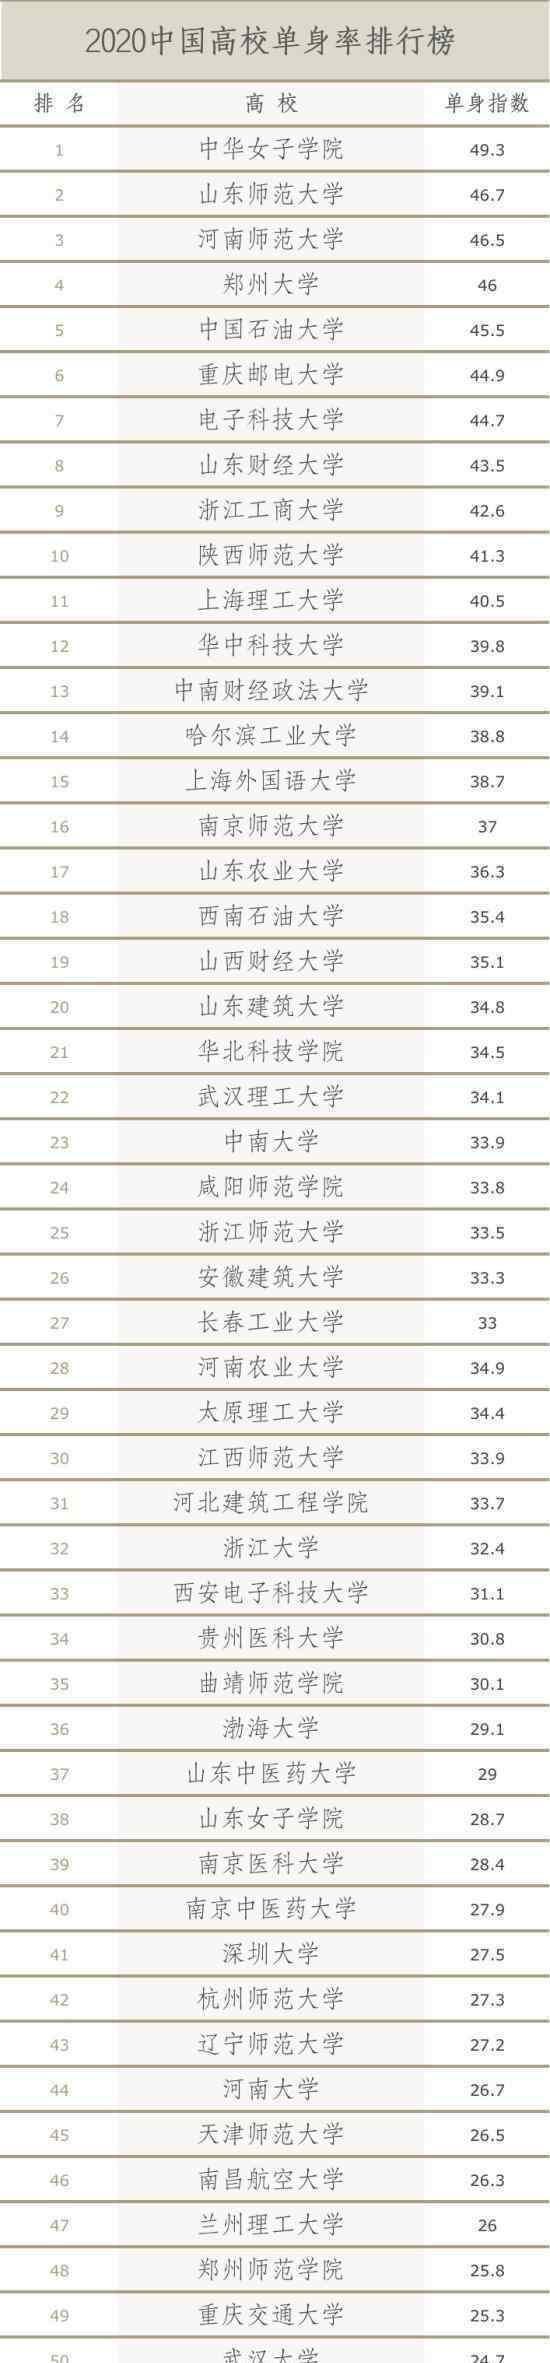 中国高校单身率排行榜出炉 附名单目录